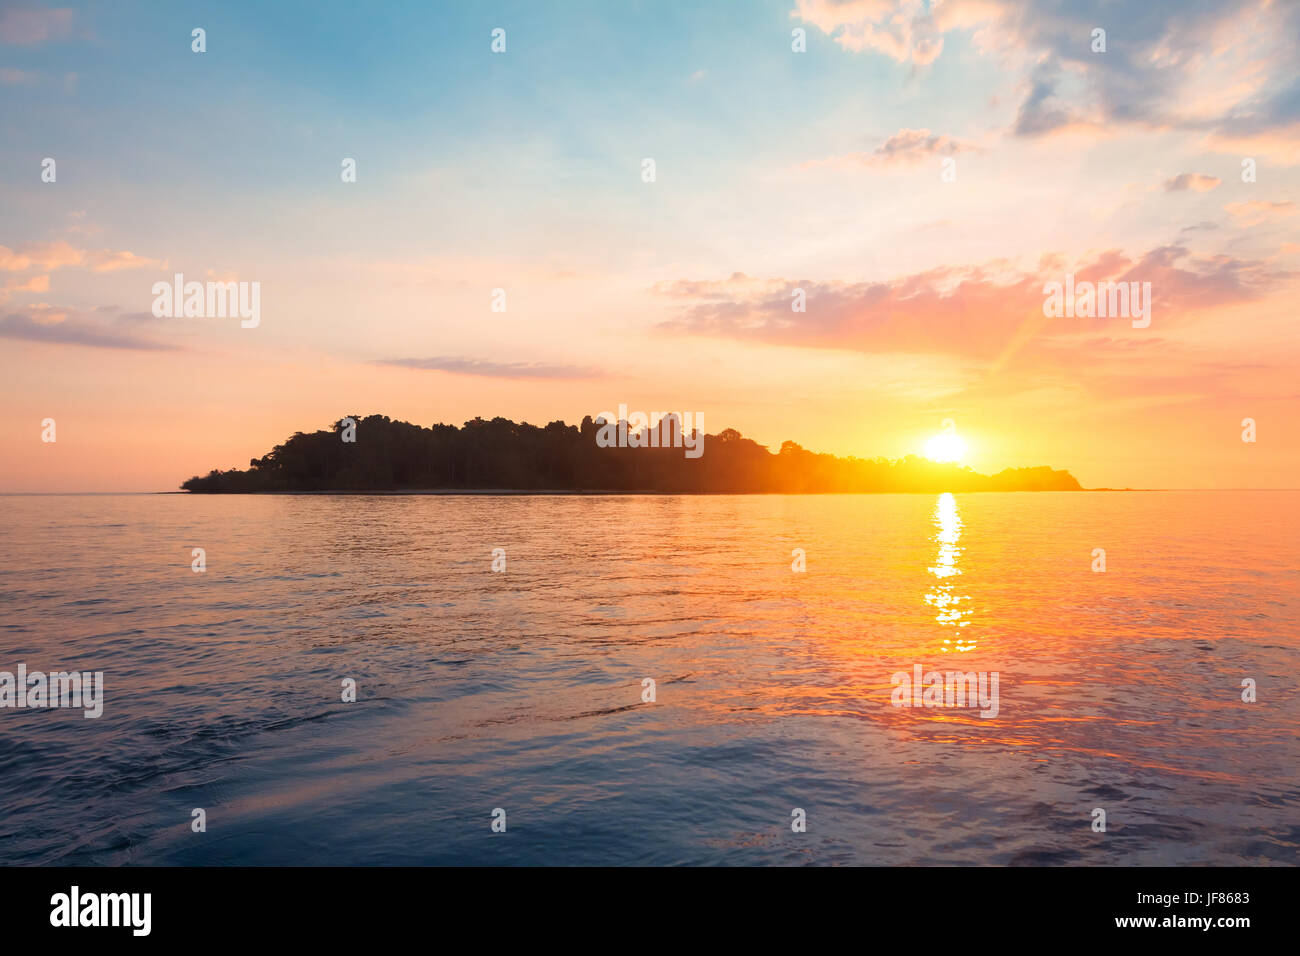 Silhouette einer tropischen Insel vom Meer Wasser umgeben am Horizont mit einem wunderschönen Sonnenuntergang Licht Stockfoto